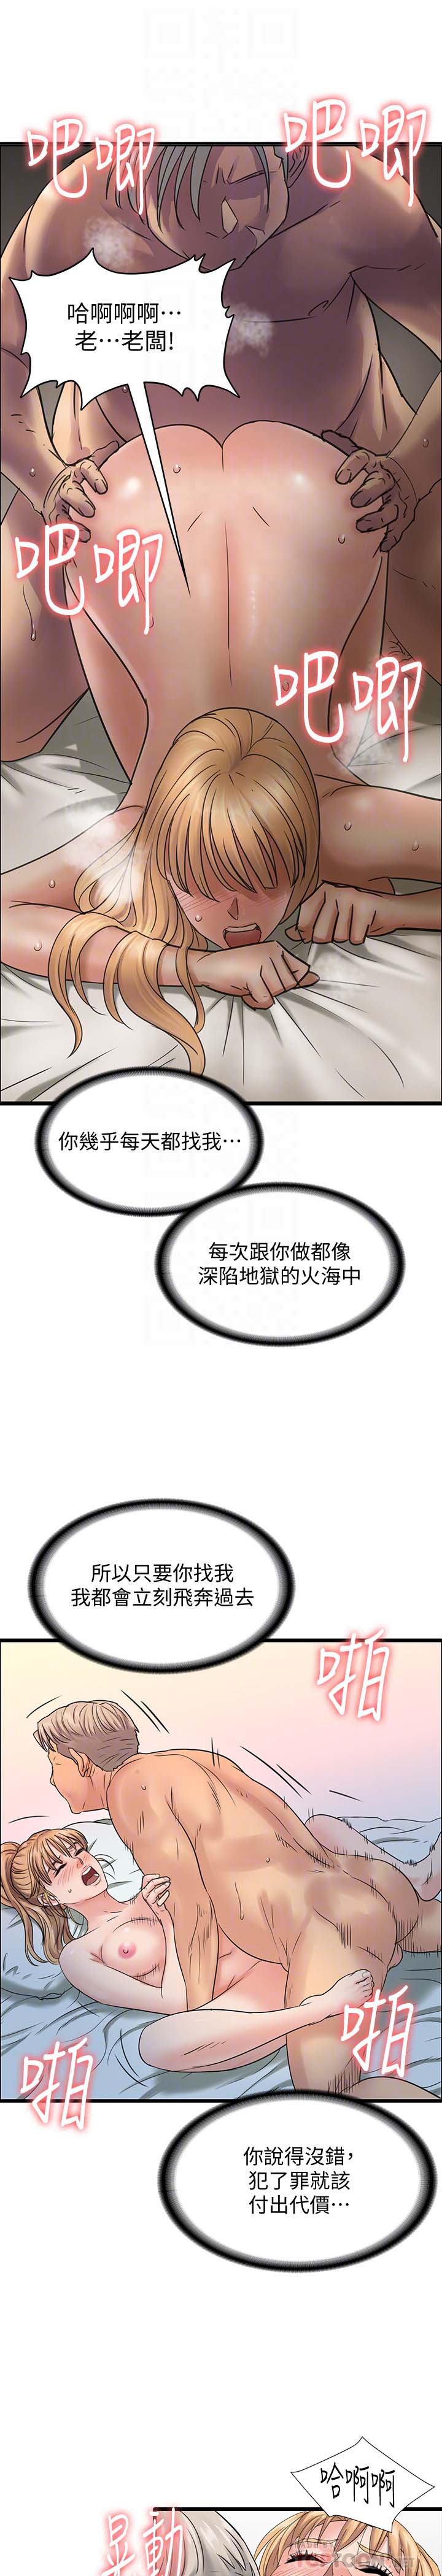 《傀儡》漫画 第106话 贤儿任刘学英蹂躏的原因